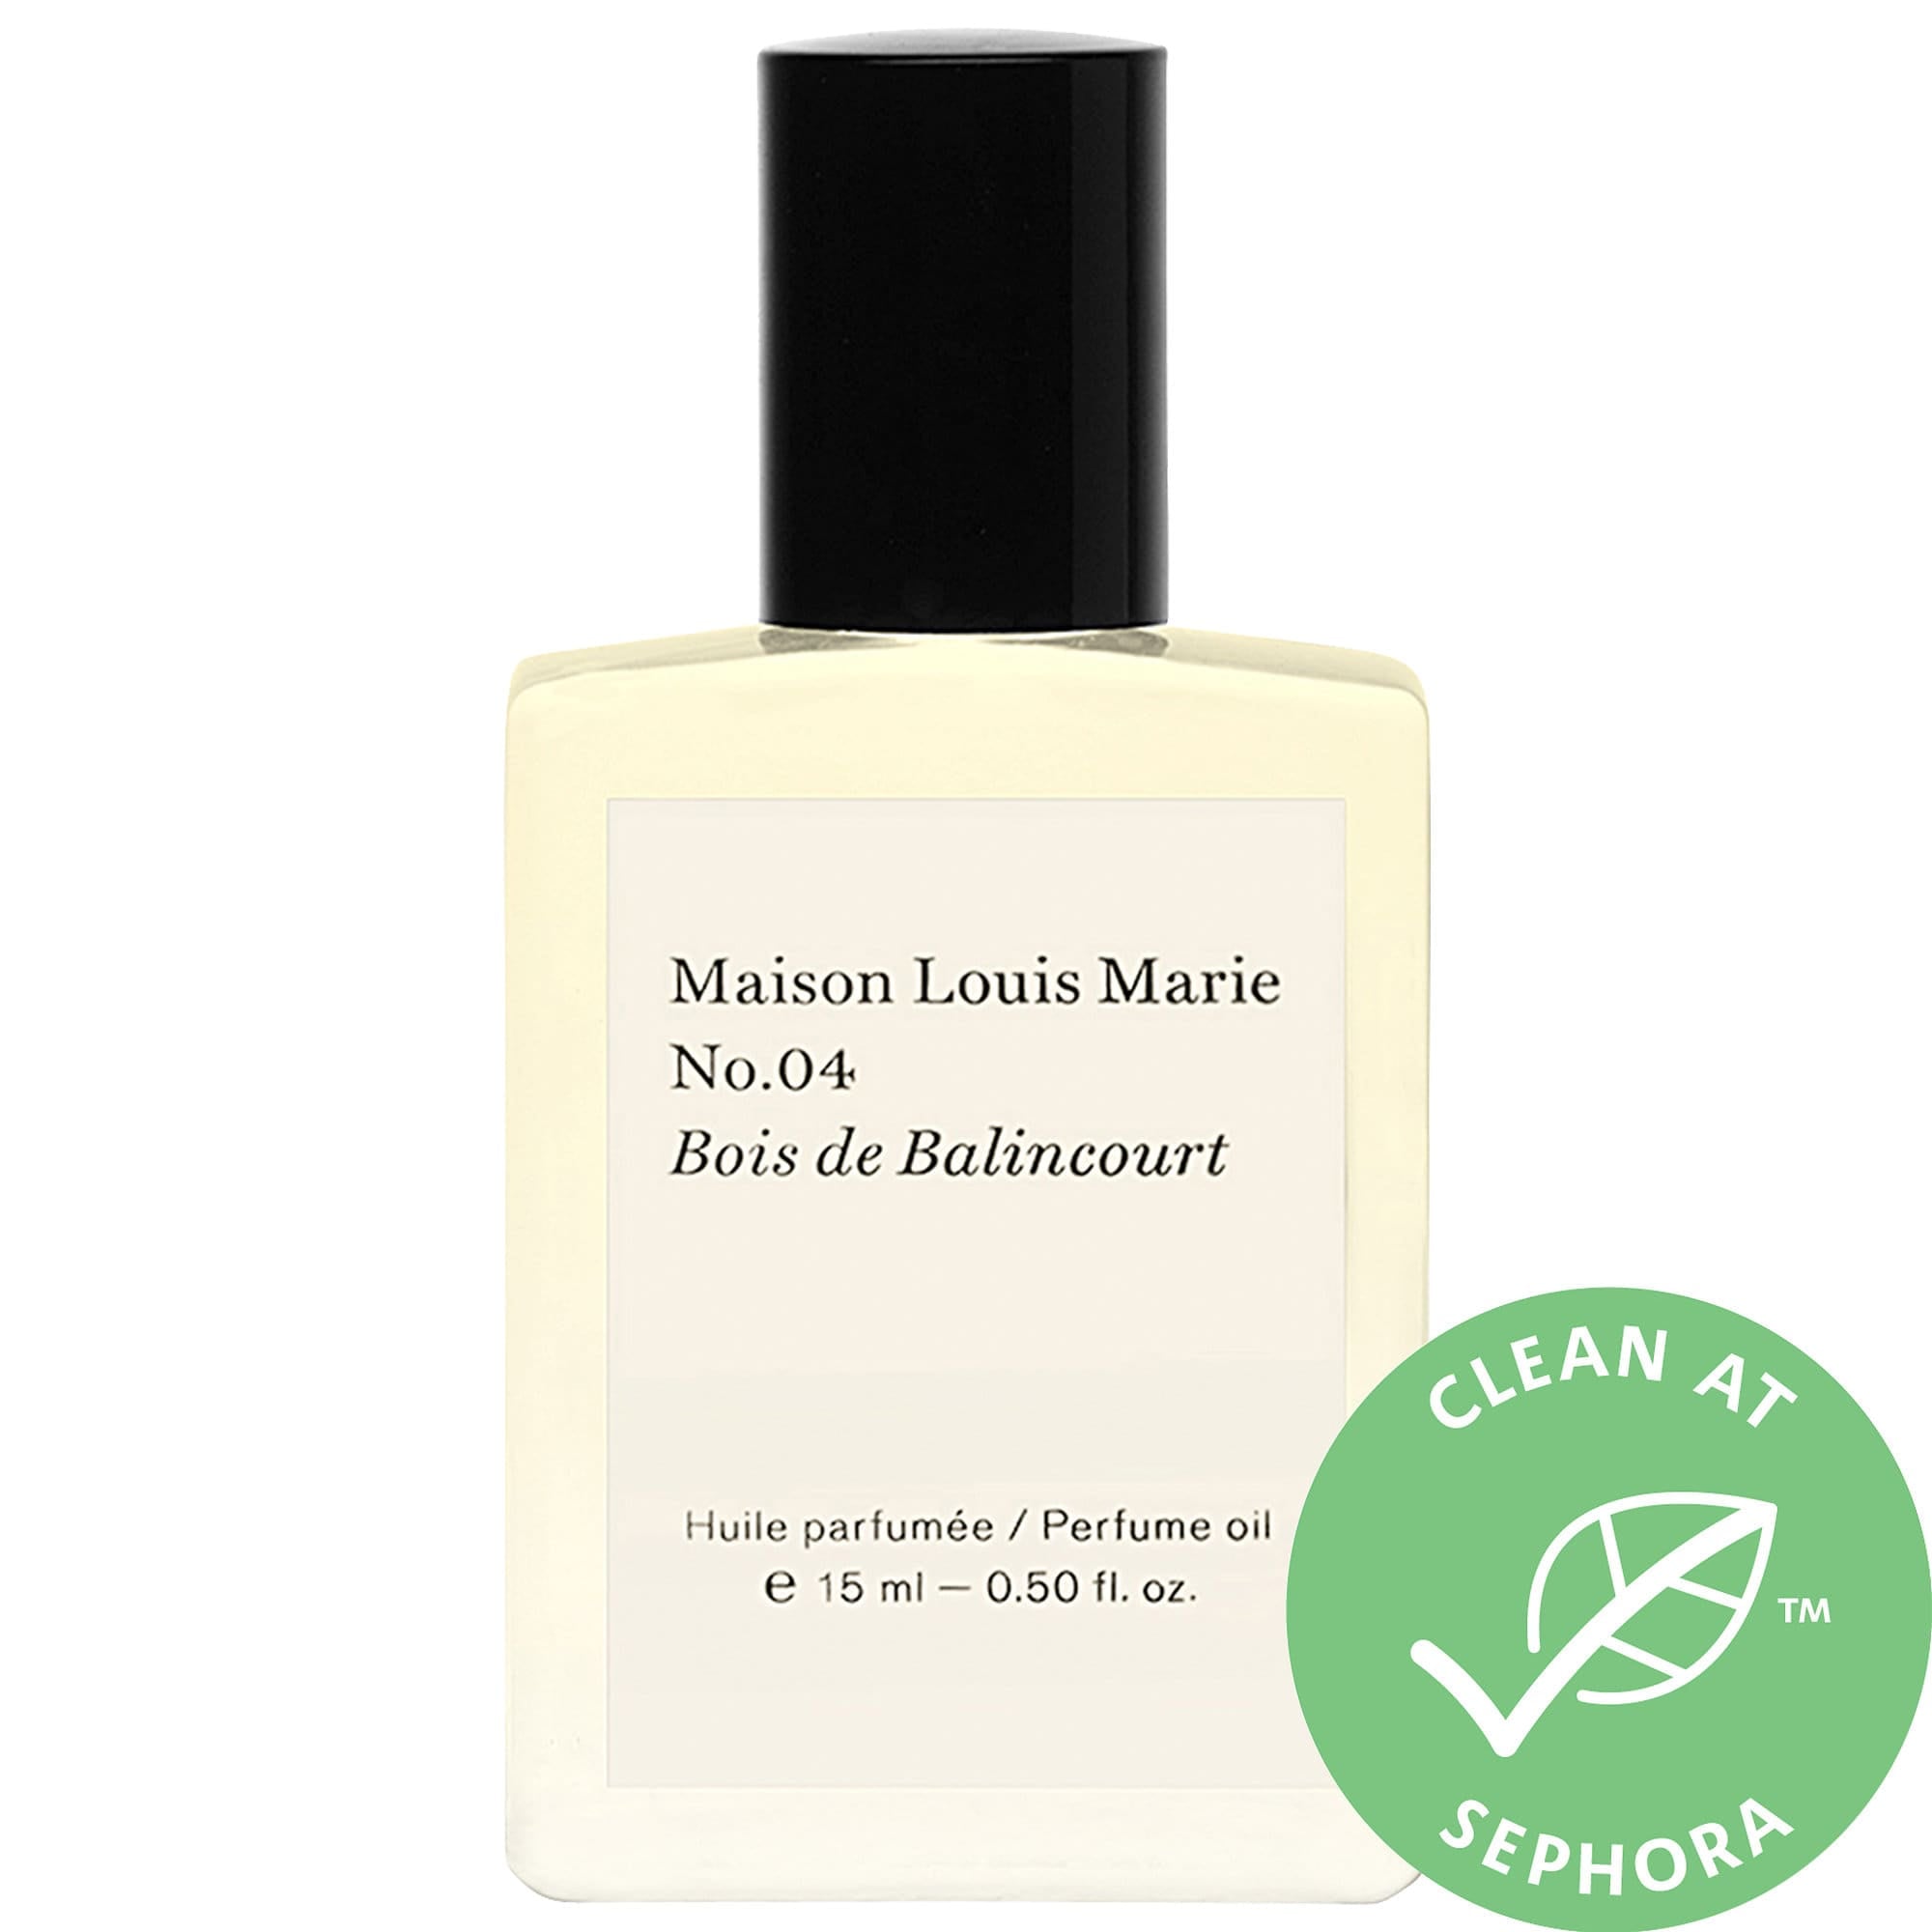 Maison Louis Marie No.04 Bois de Balincourt Perfume Oil | The Best